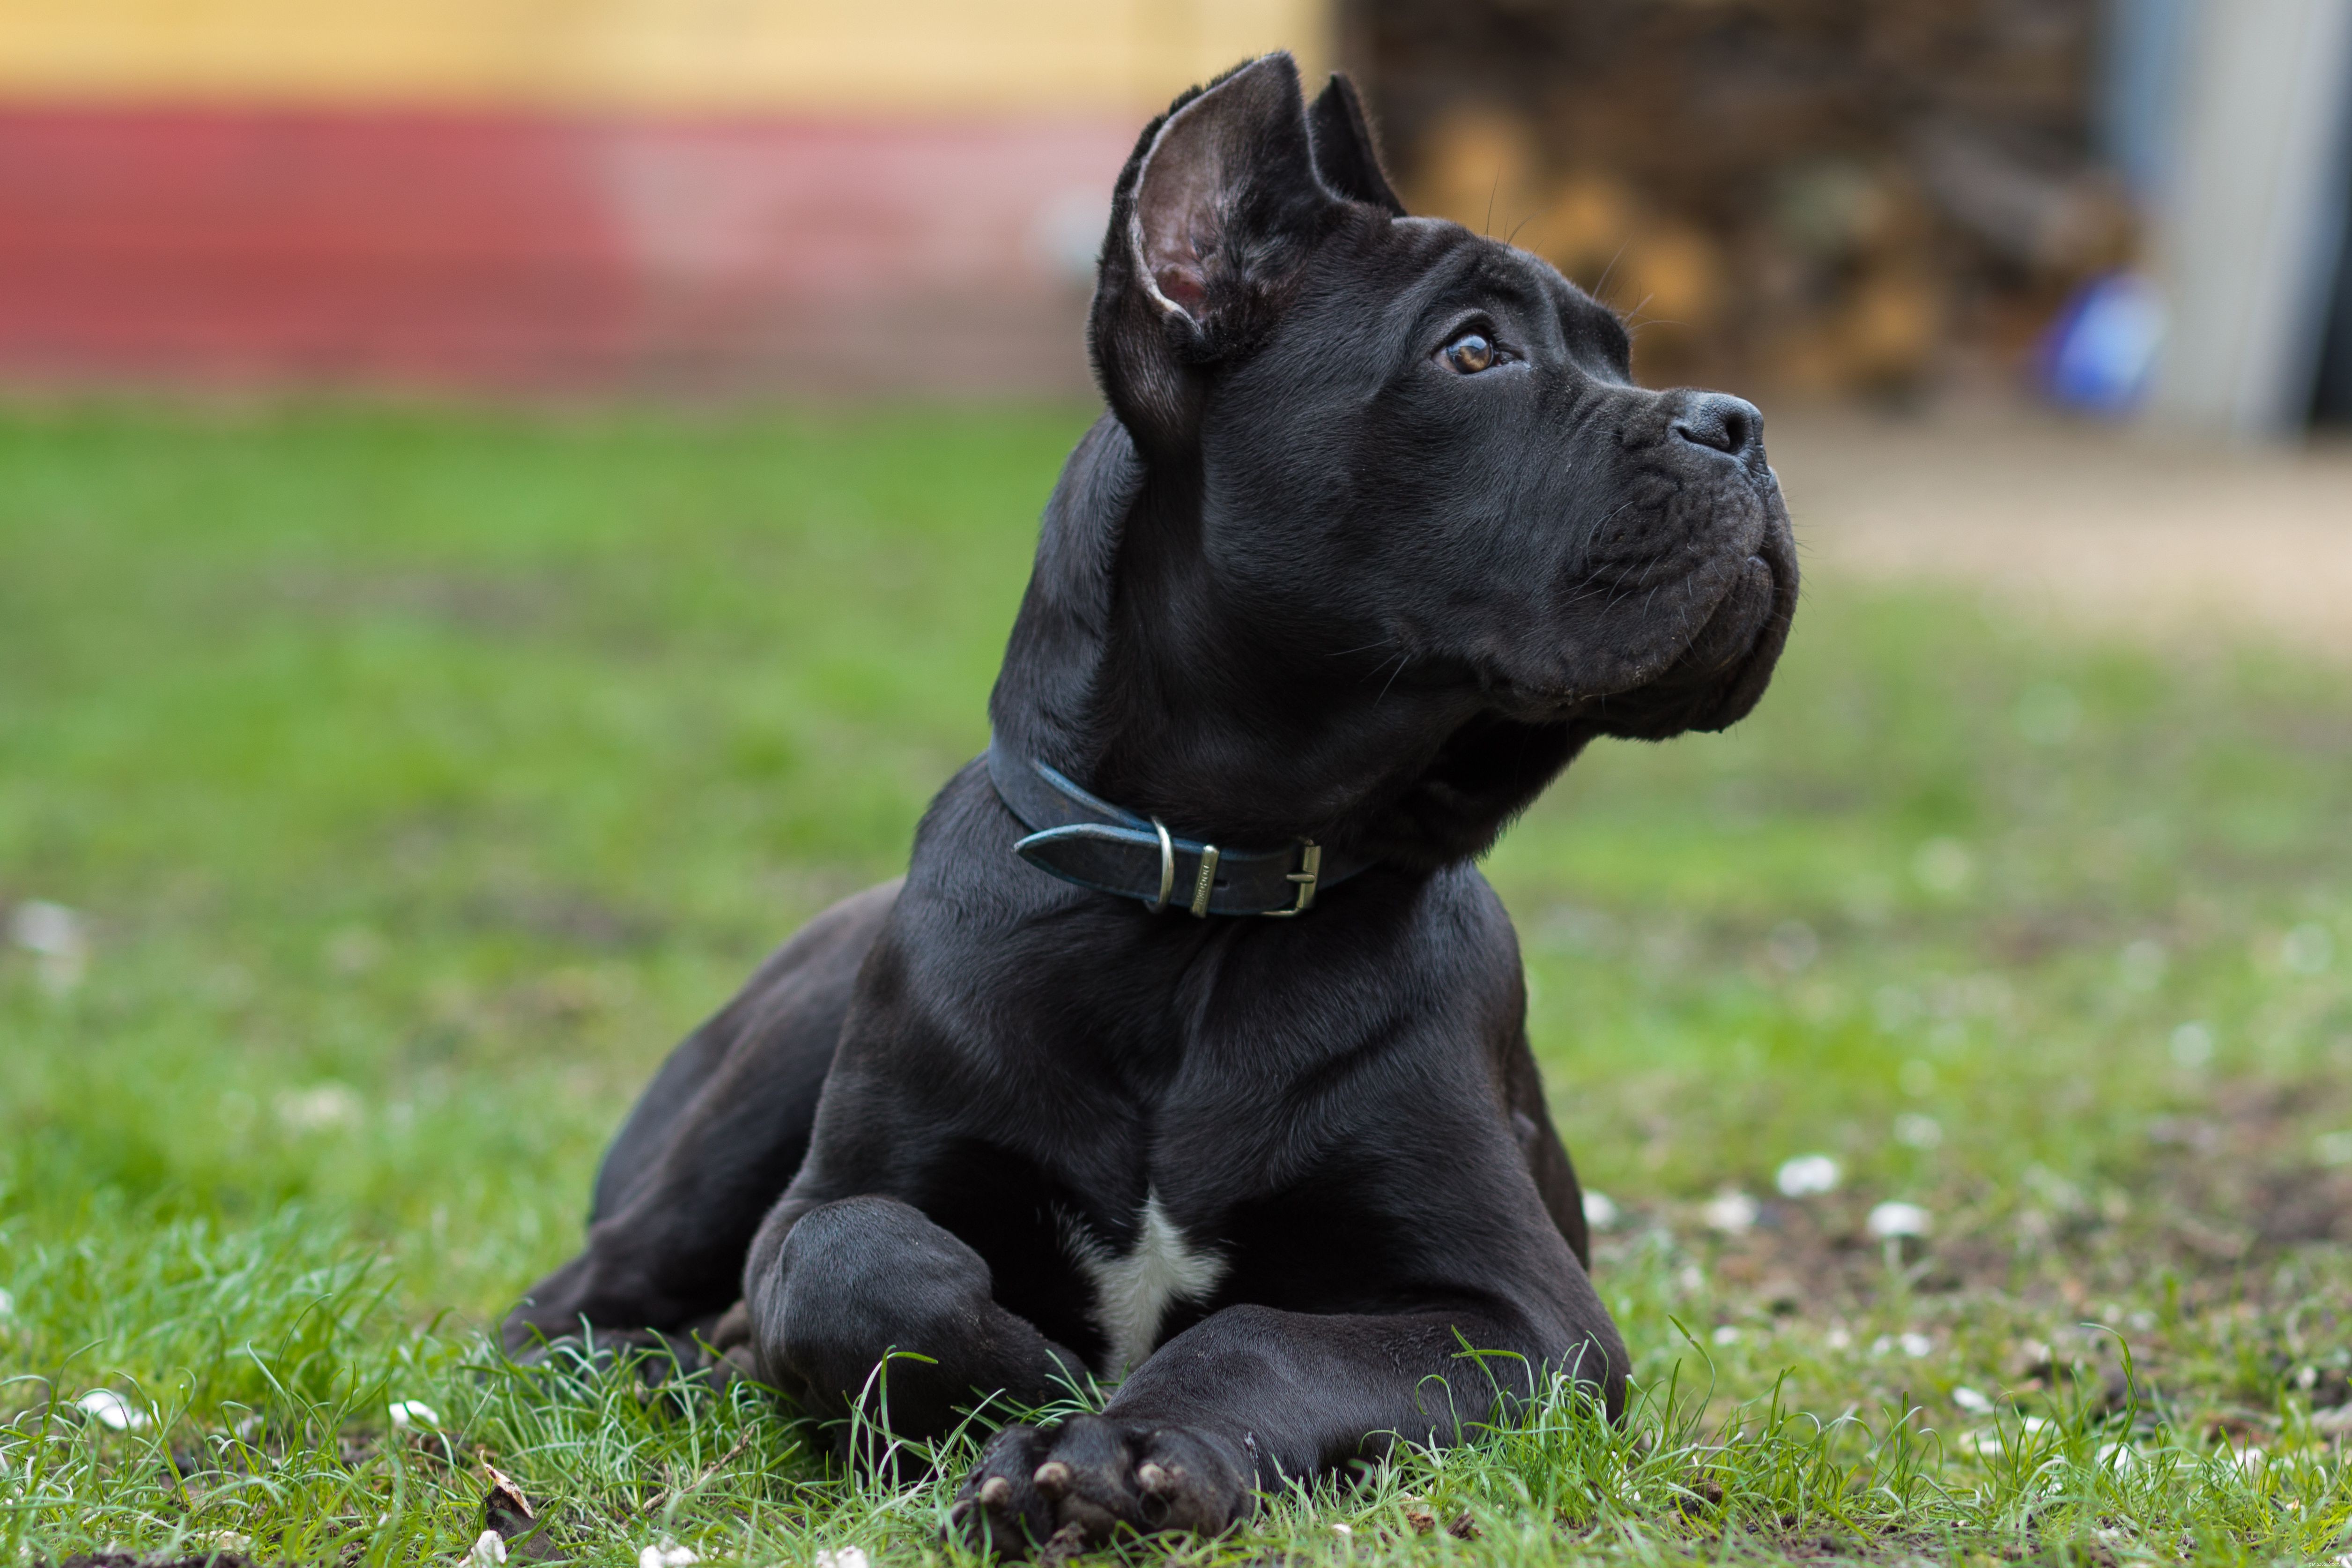 Cane corso :caractéristiques et soins de la race de chien